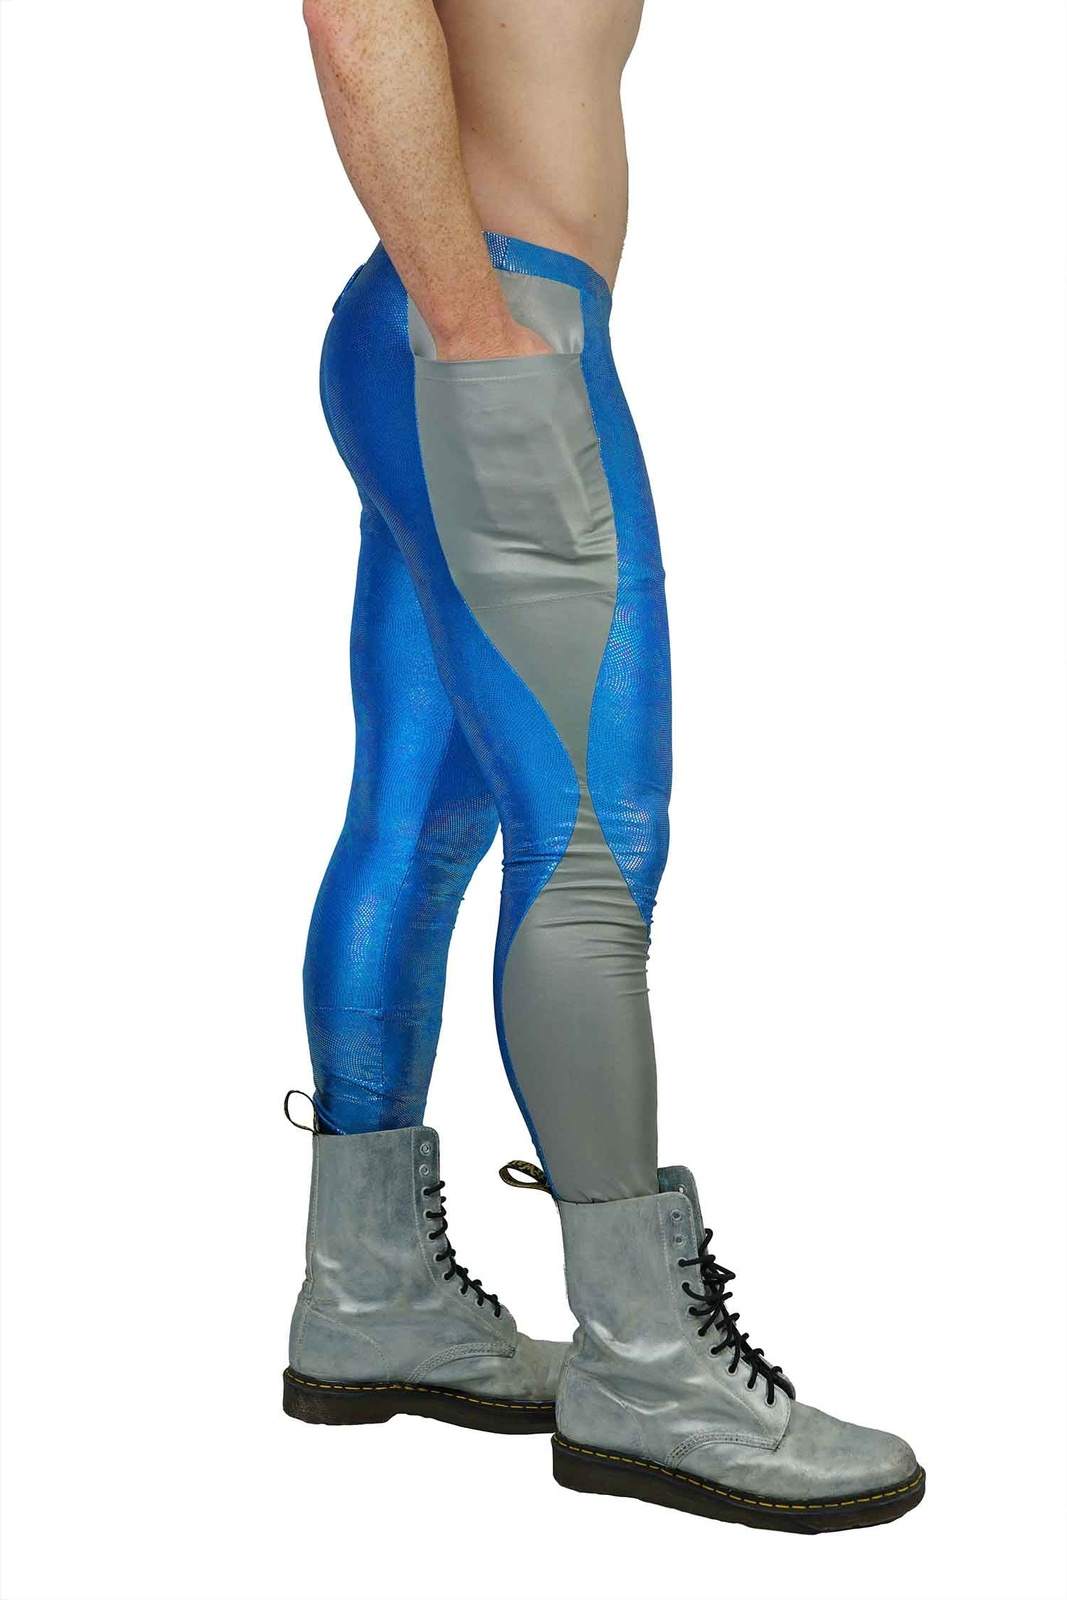 mens blue leggings from Love Khaos